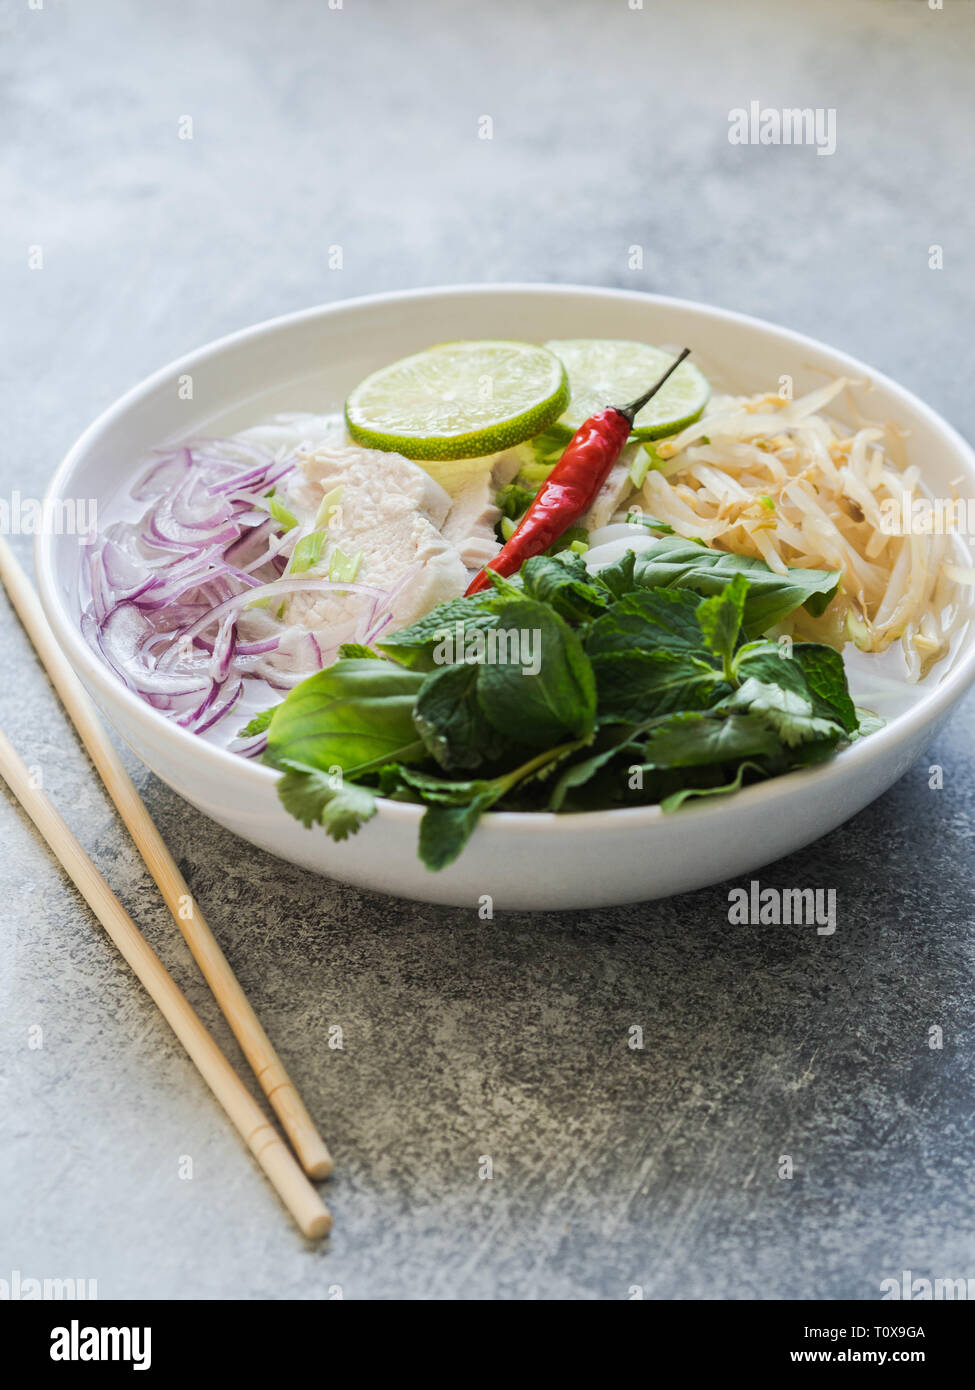 Tradizionale zuppa vietnamita- pho ga in bianco ciotola con pollo e riso tagliatelle, menta e coriandolo, verde e rosso cipolla, peperoncino, i germogli di soia e calce Foto Stock